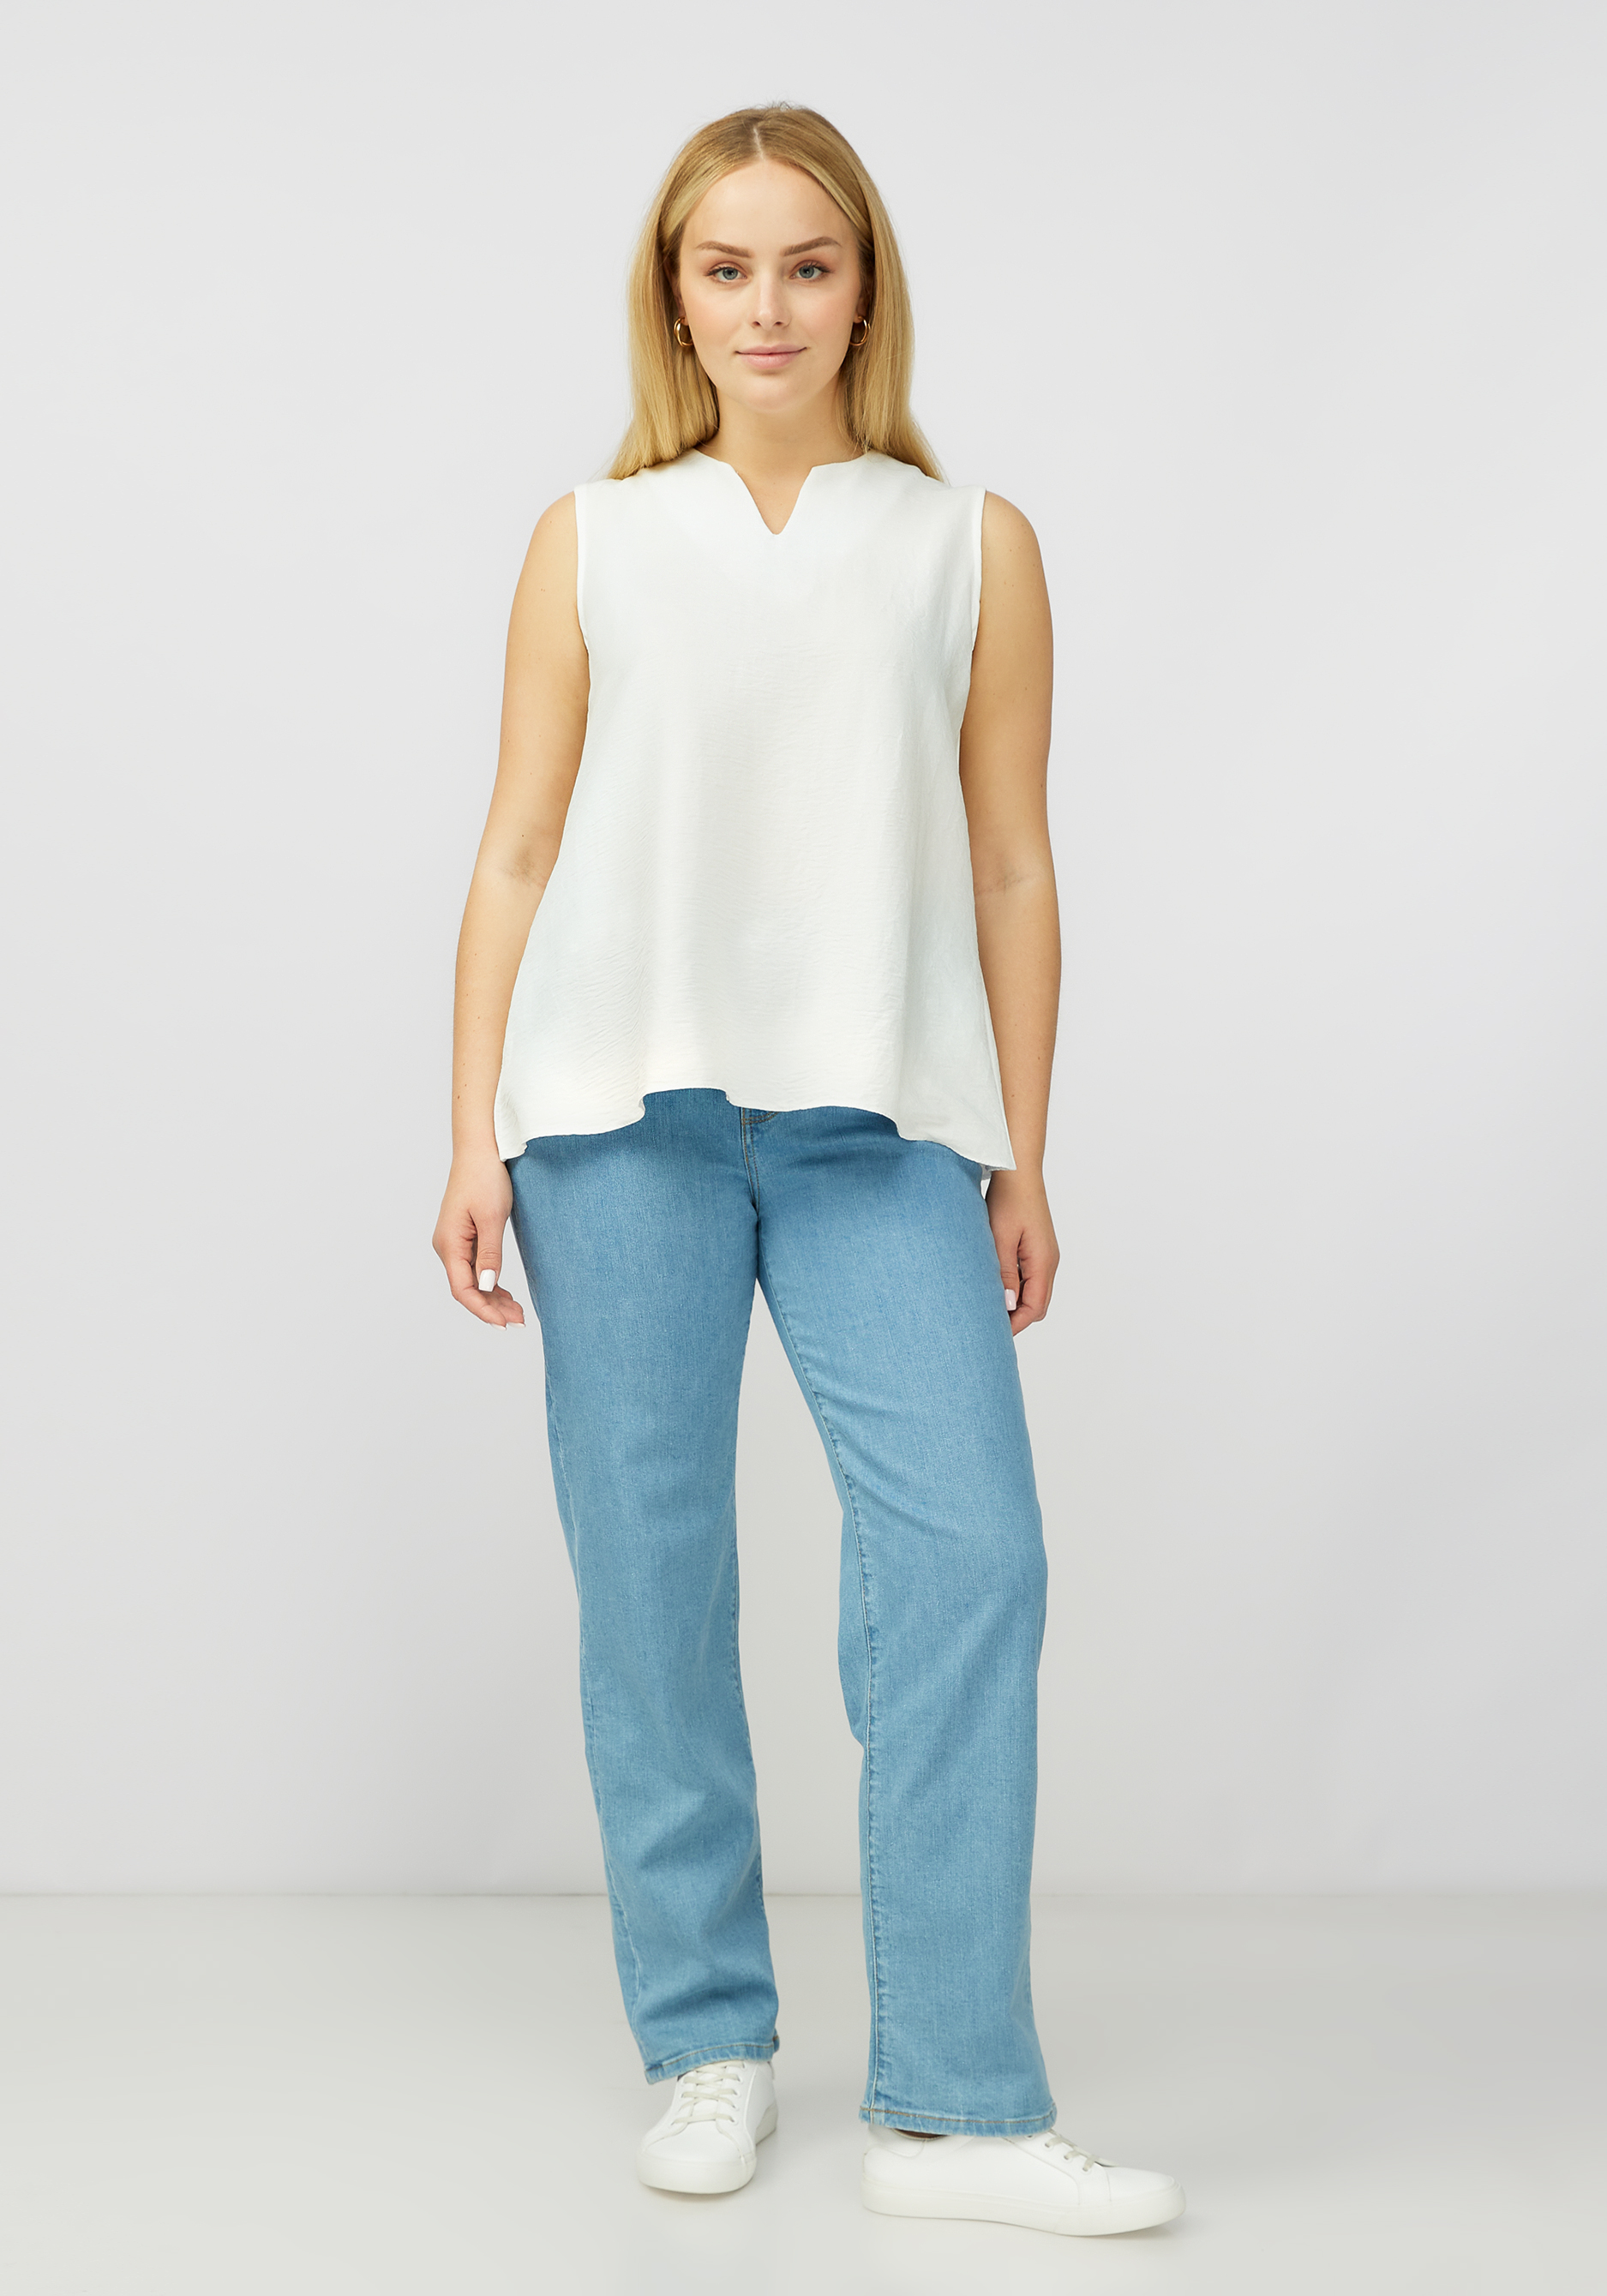 Блуза без рукавов с V образным вырезом VeraVo, размер 52, цвет белый - фото 3